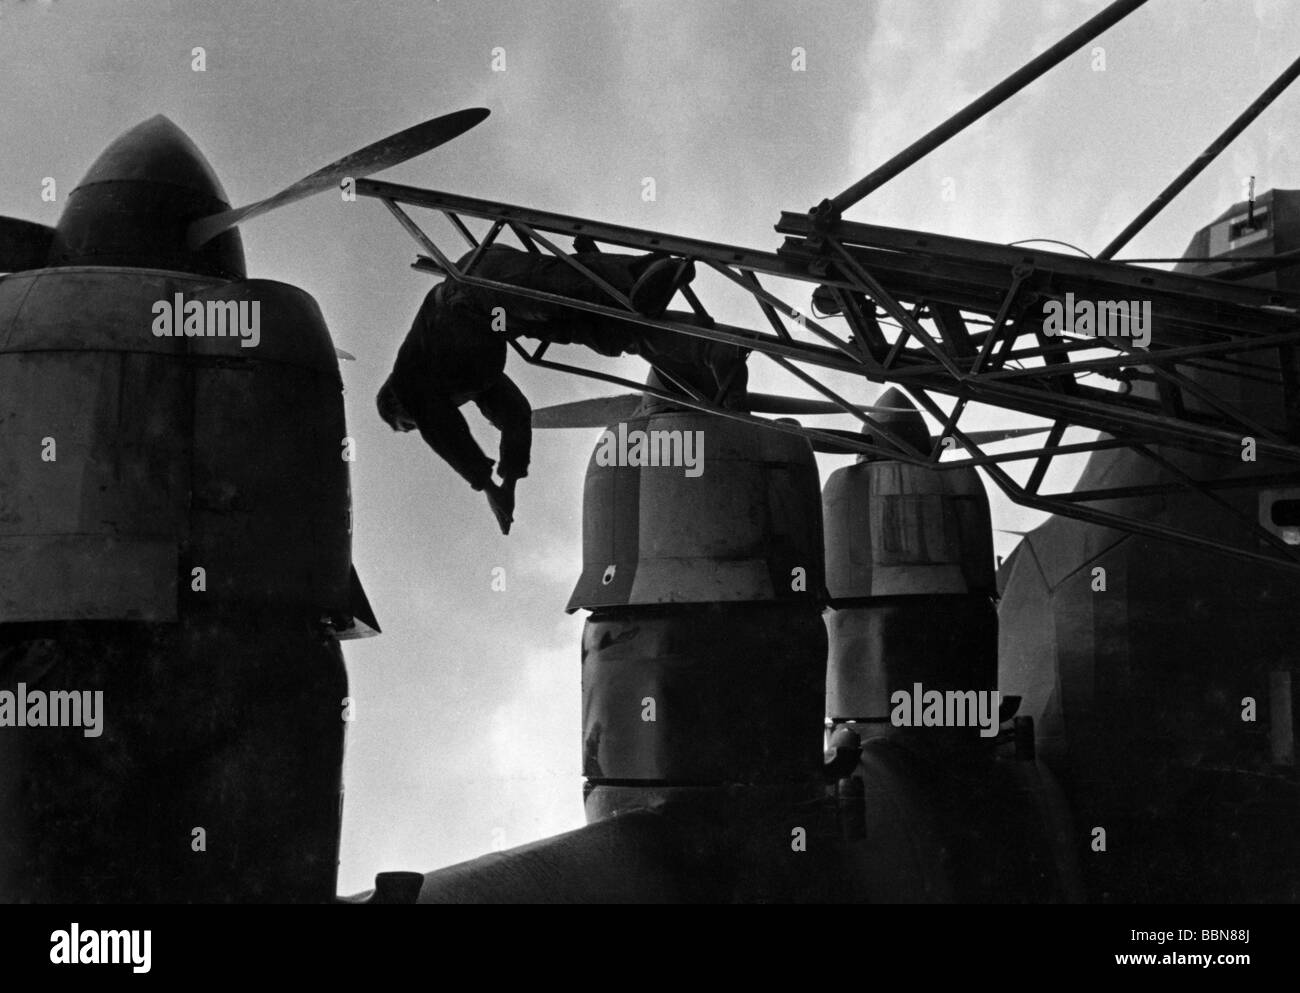 Eventi, Seconda guerra mondiale / seconda guerra mondiale, guerra aerea, aereo, dettagli / interni, motori di destra di un aereo di trasporto tedesco Messerschmitt Me 323 'Gigant' (Giant), fronte orientale, 1943 / 1944, Foto Stock